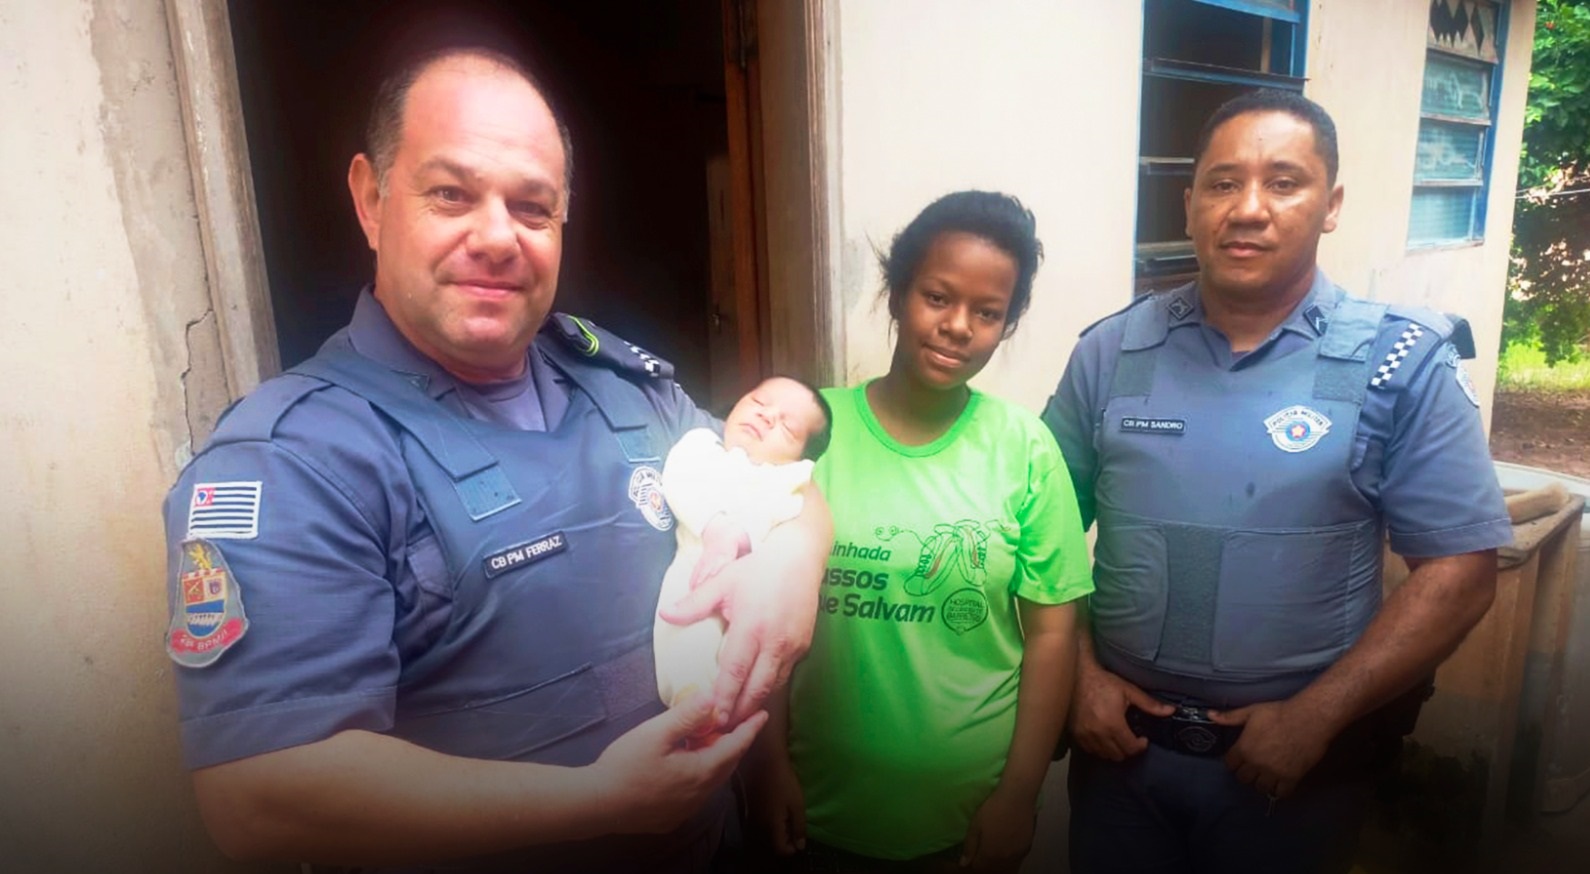 Policiais Militares realizam manobra de reanimação e salvam recém-nascido em Mirandópolis